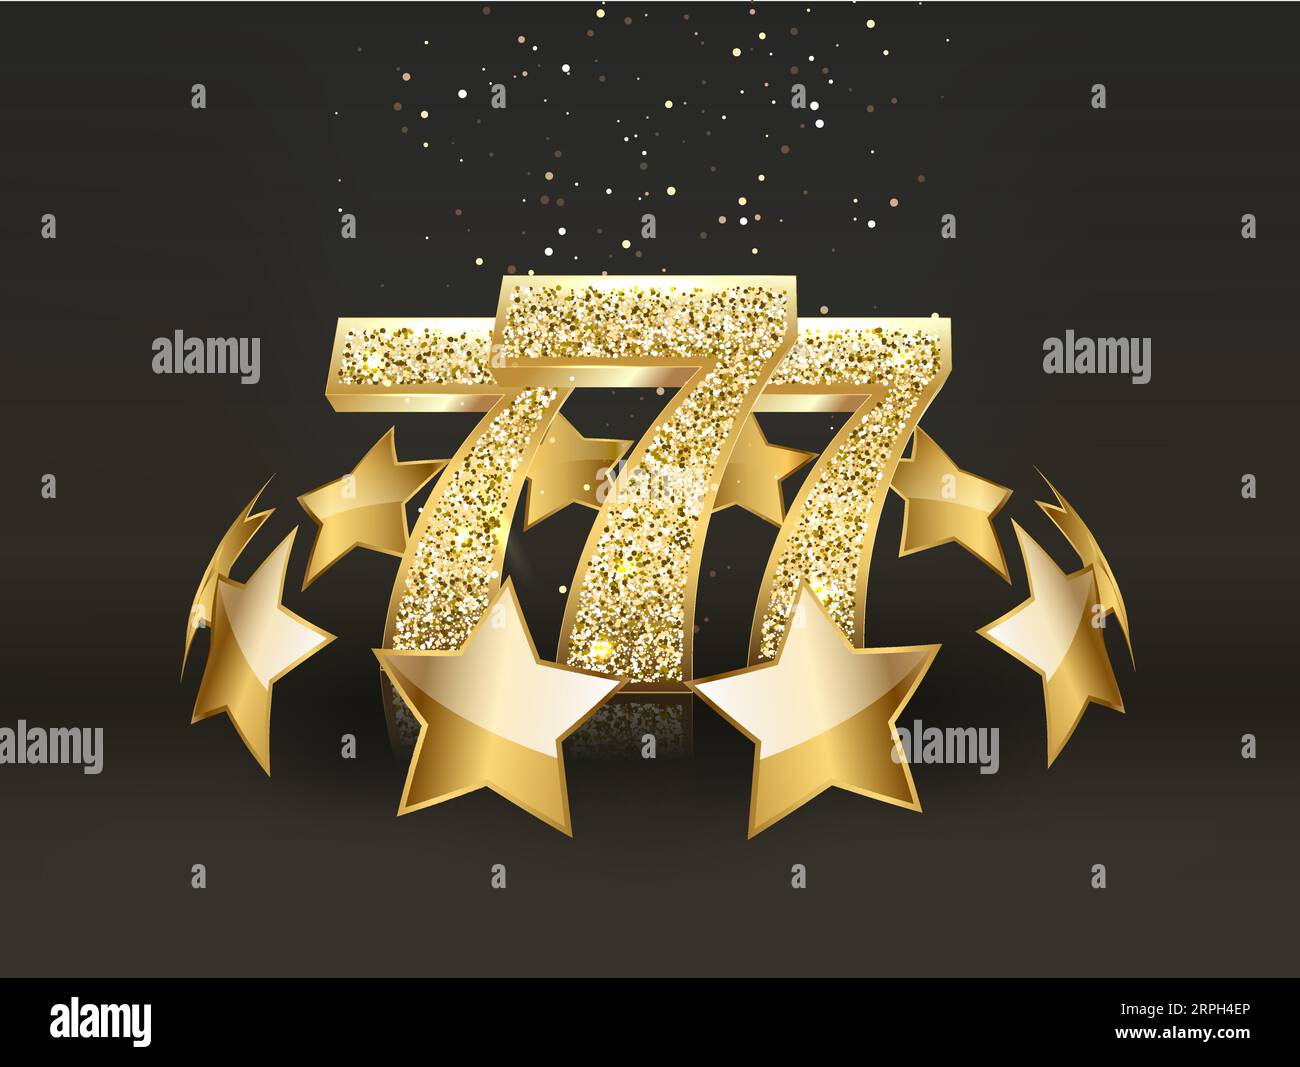 Drei golden glitzernde Siebener auf schwarzem Hintergrund. Luxus-Casino-Banner Big Win Slots 777 . Vektorgrafik Stock Vektor